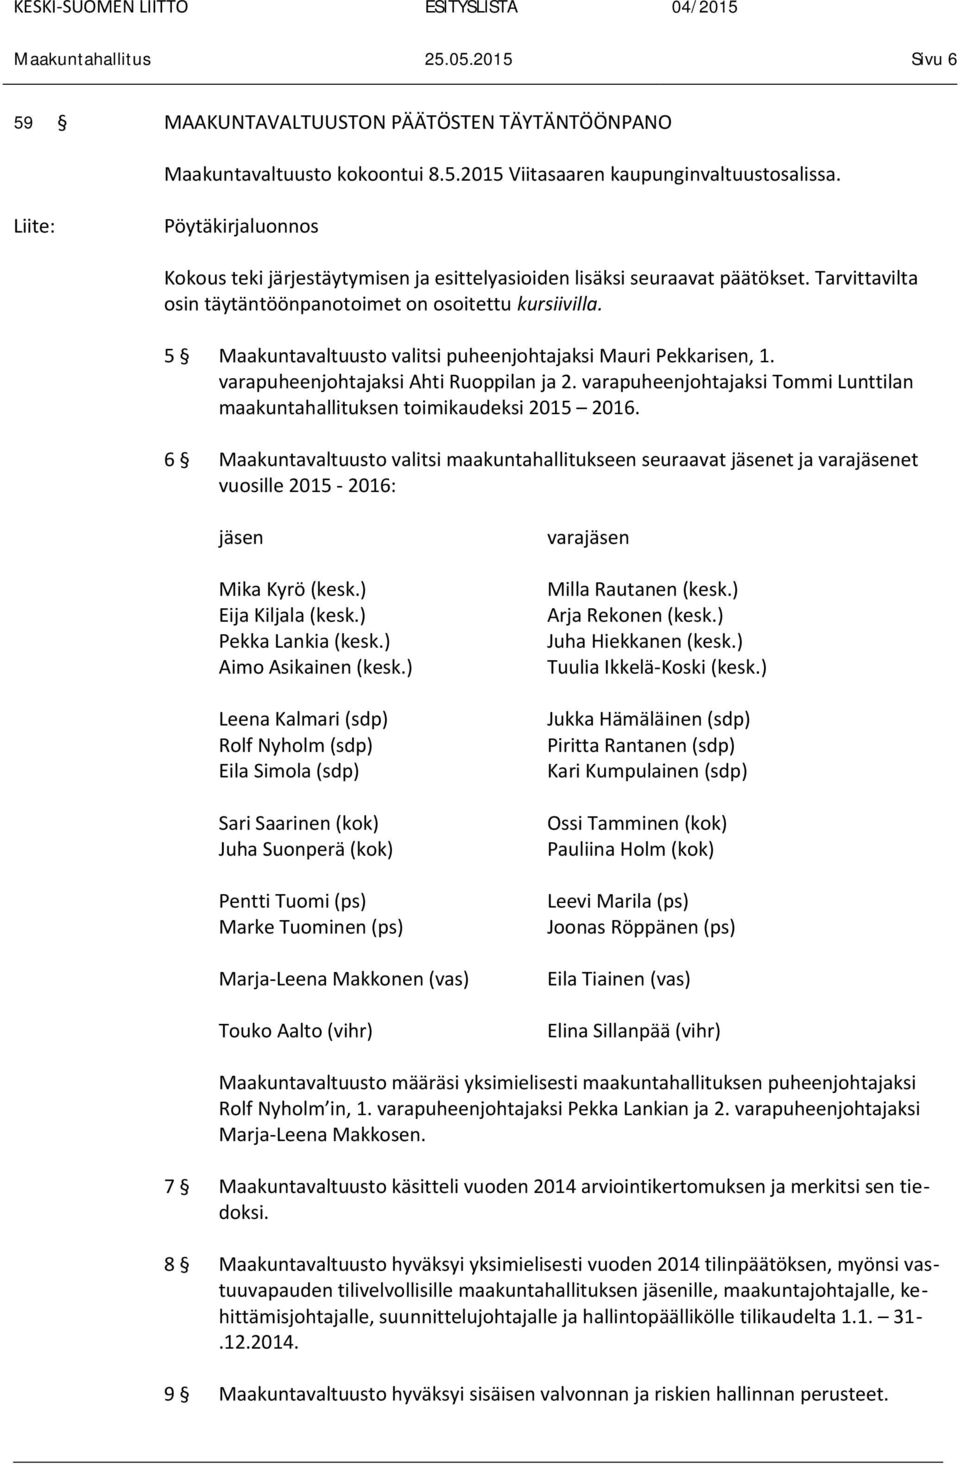 5 Maakuntavaltuusto valitsi puheenjohtajaksi Mauri Pekkarisen, 1. varapuheenjohtajaksi Ahti Ruoppilan ja 2. varapuheenjohtajaksi Tommi Lunttilan maakuntahallituksen toimikaudeksi 2015 2016.